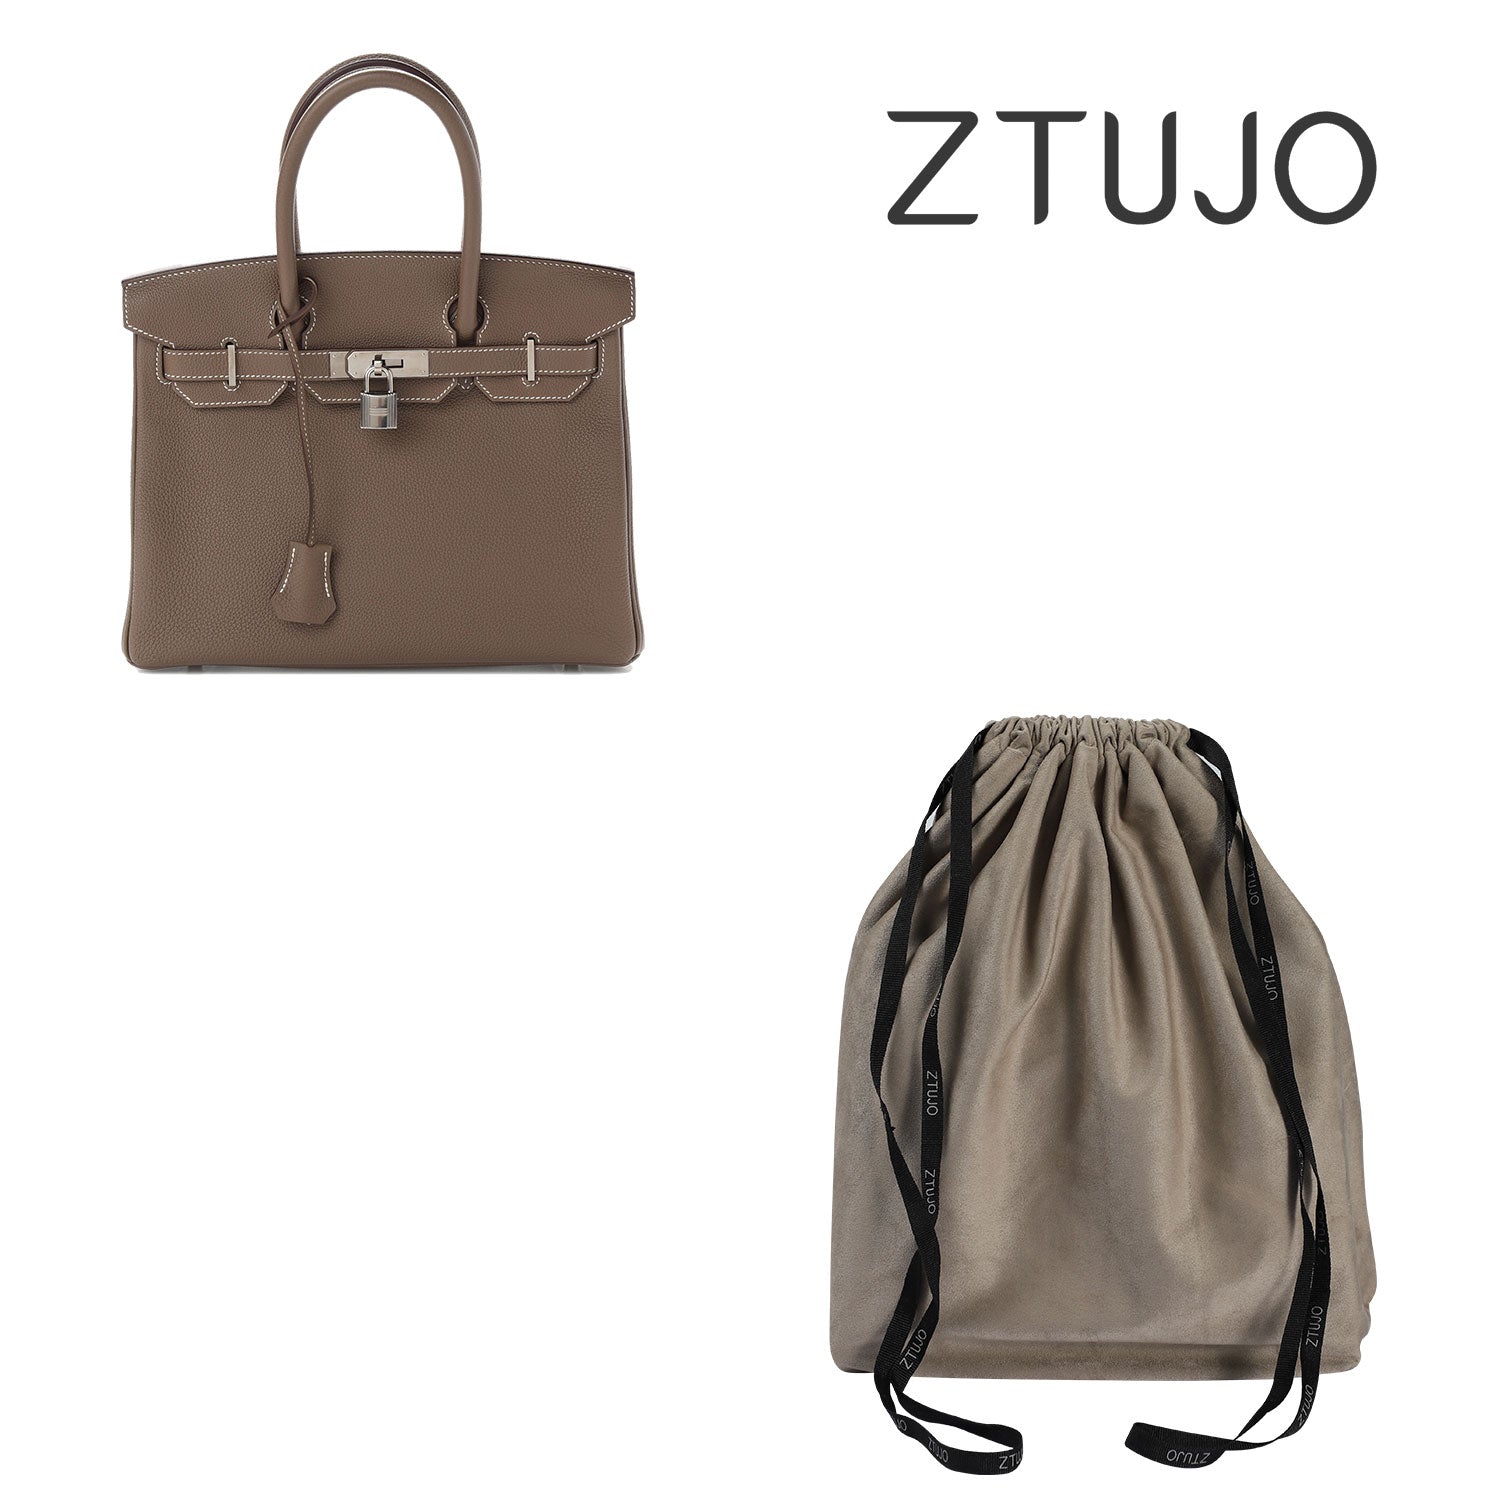 ZTUJO Dust Bag for Handbag Lightweight Dustproof Drawstring Purse